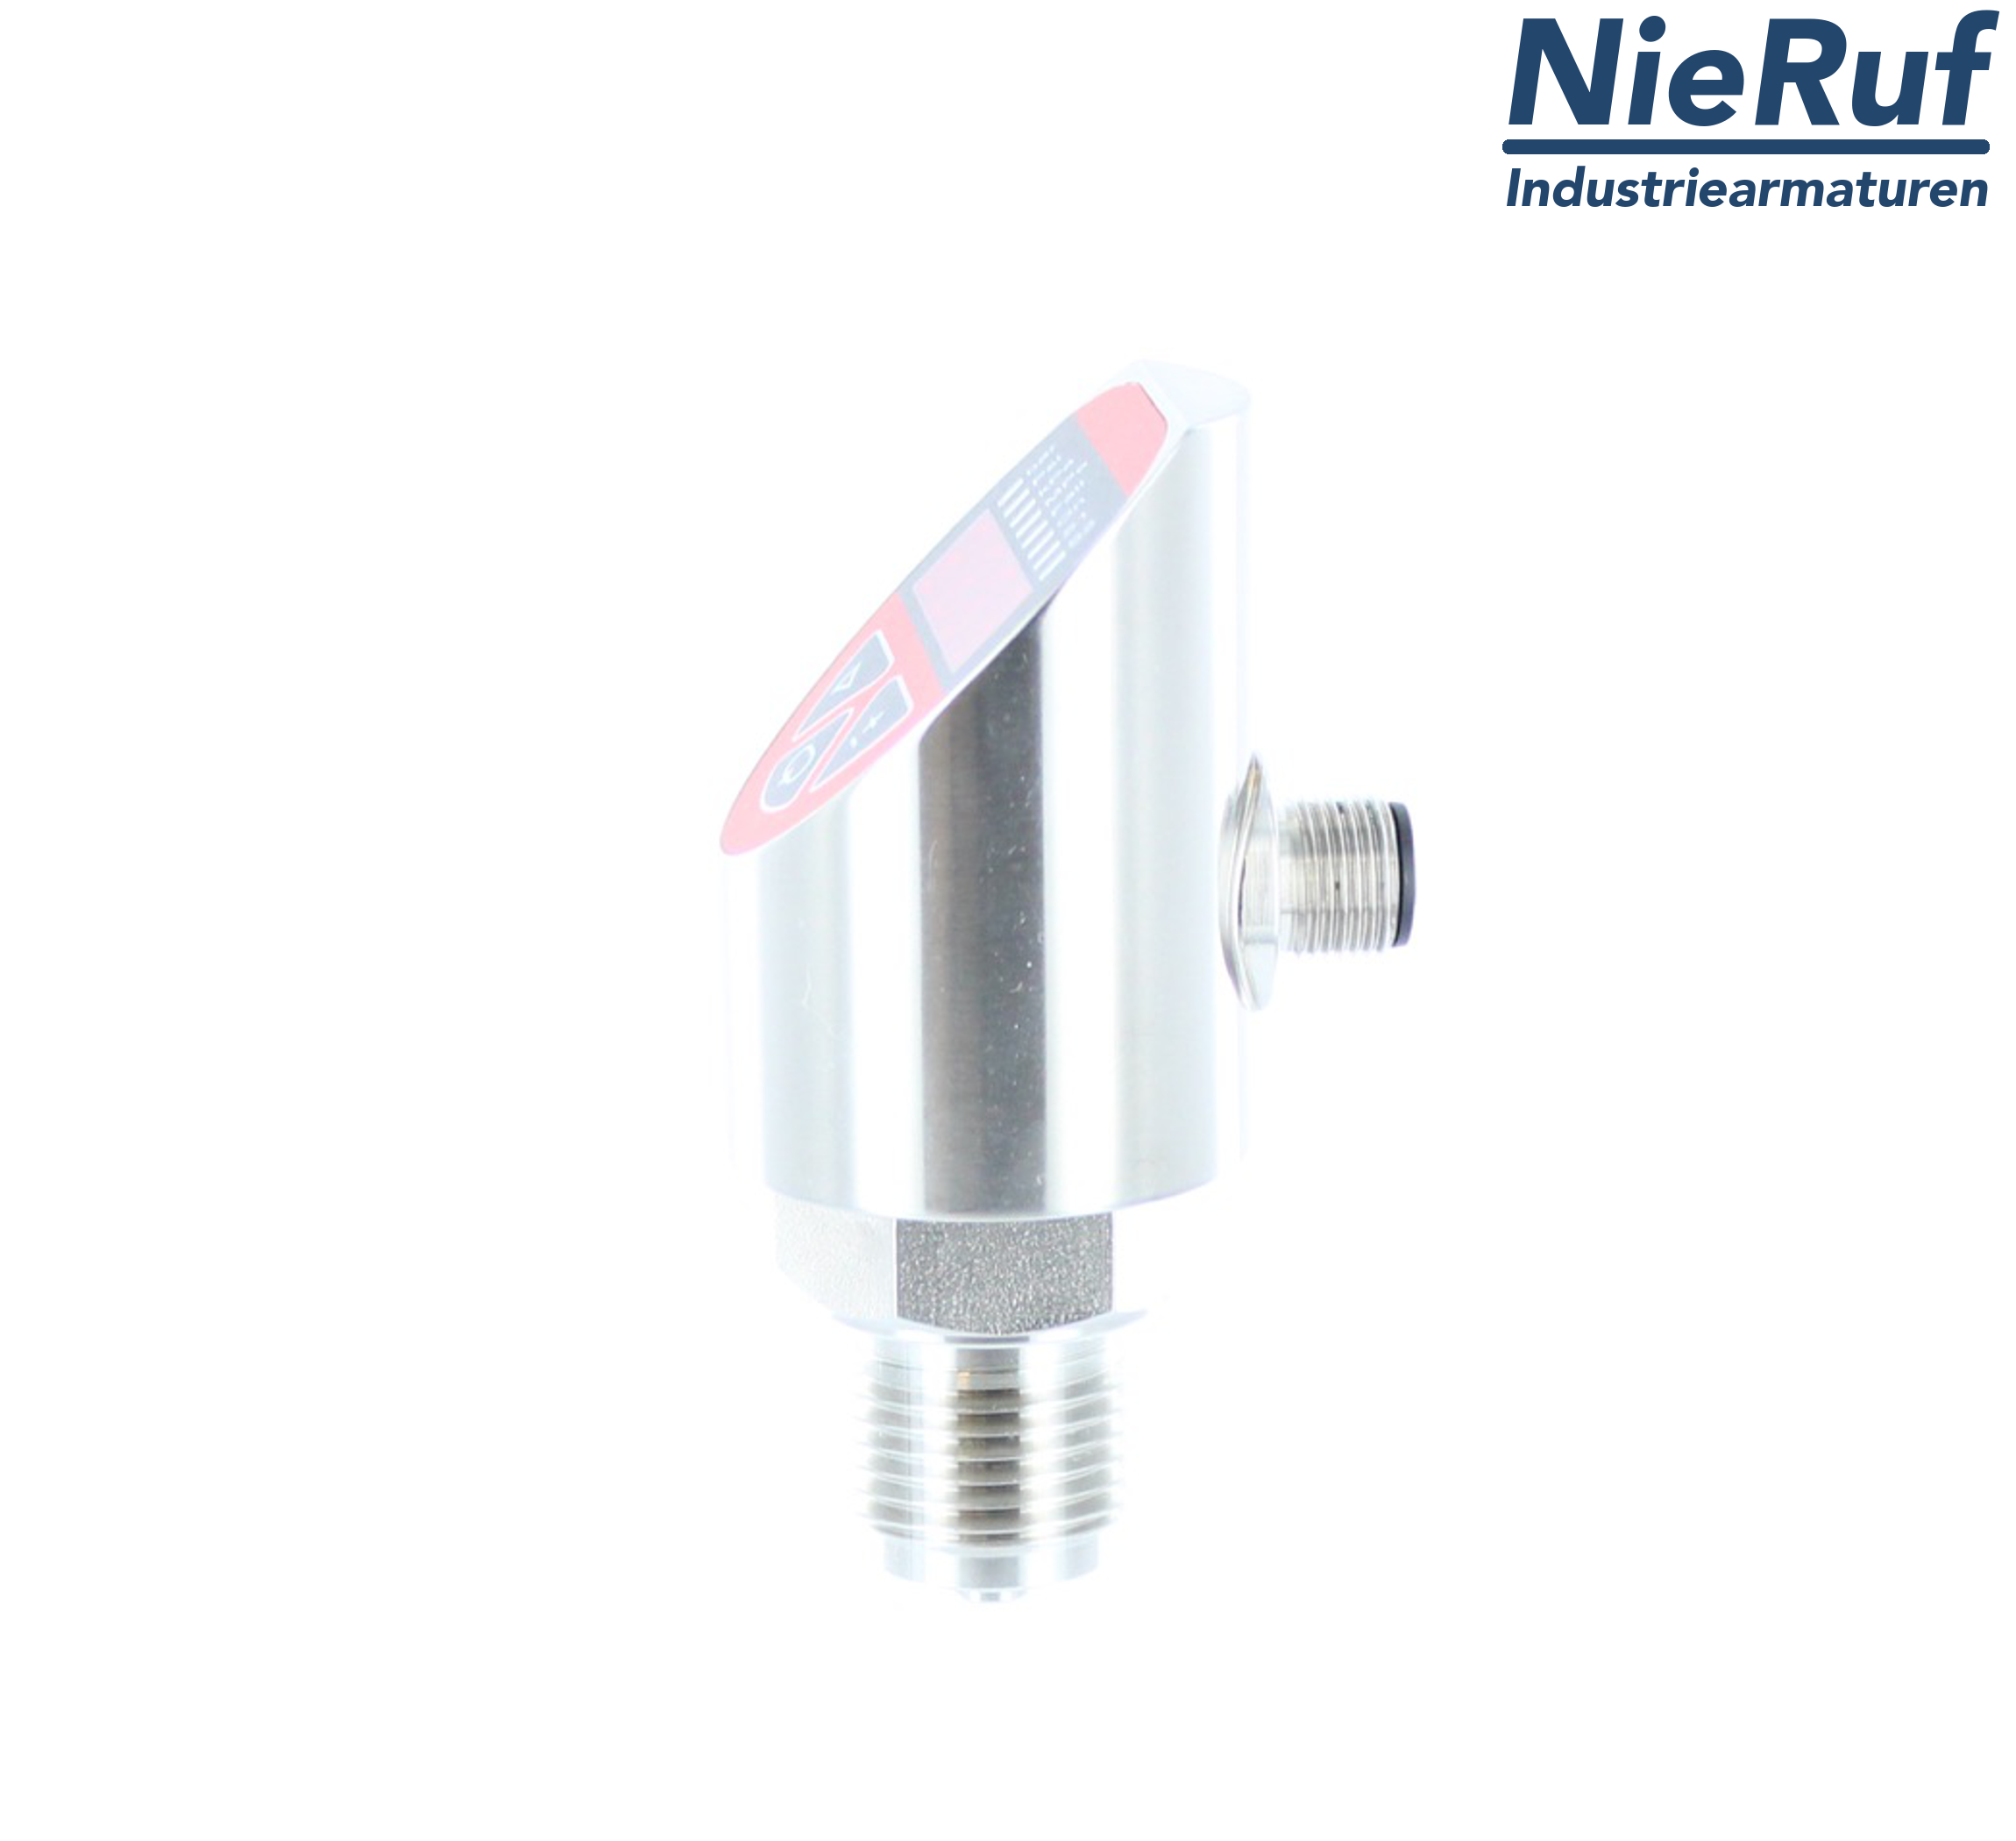 digital pressure sensor G 1/2" B 4-wire: 1xPNP, 1x4 - 20mA FPM 0,0 - 0,60 bar